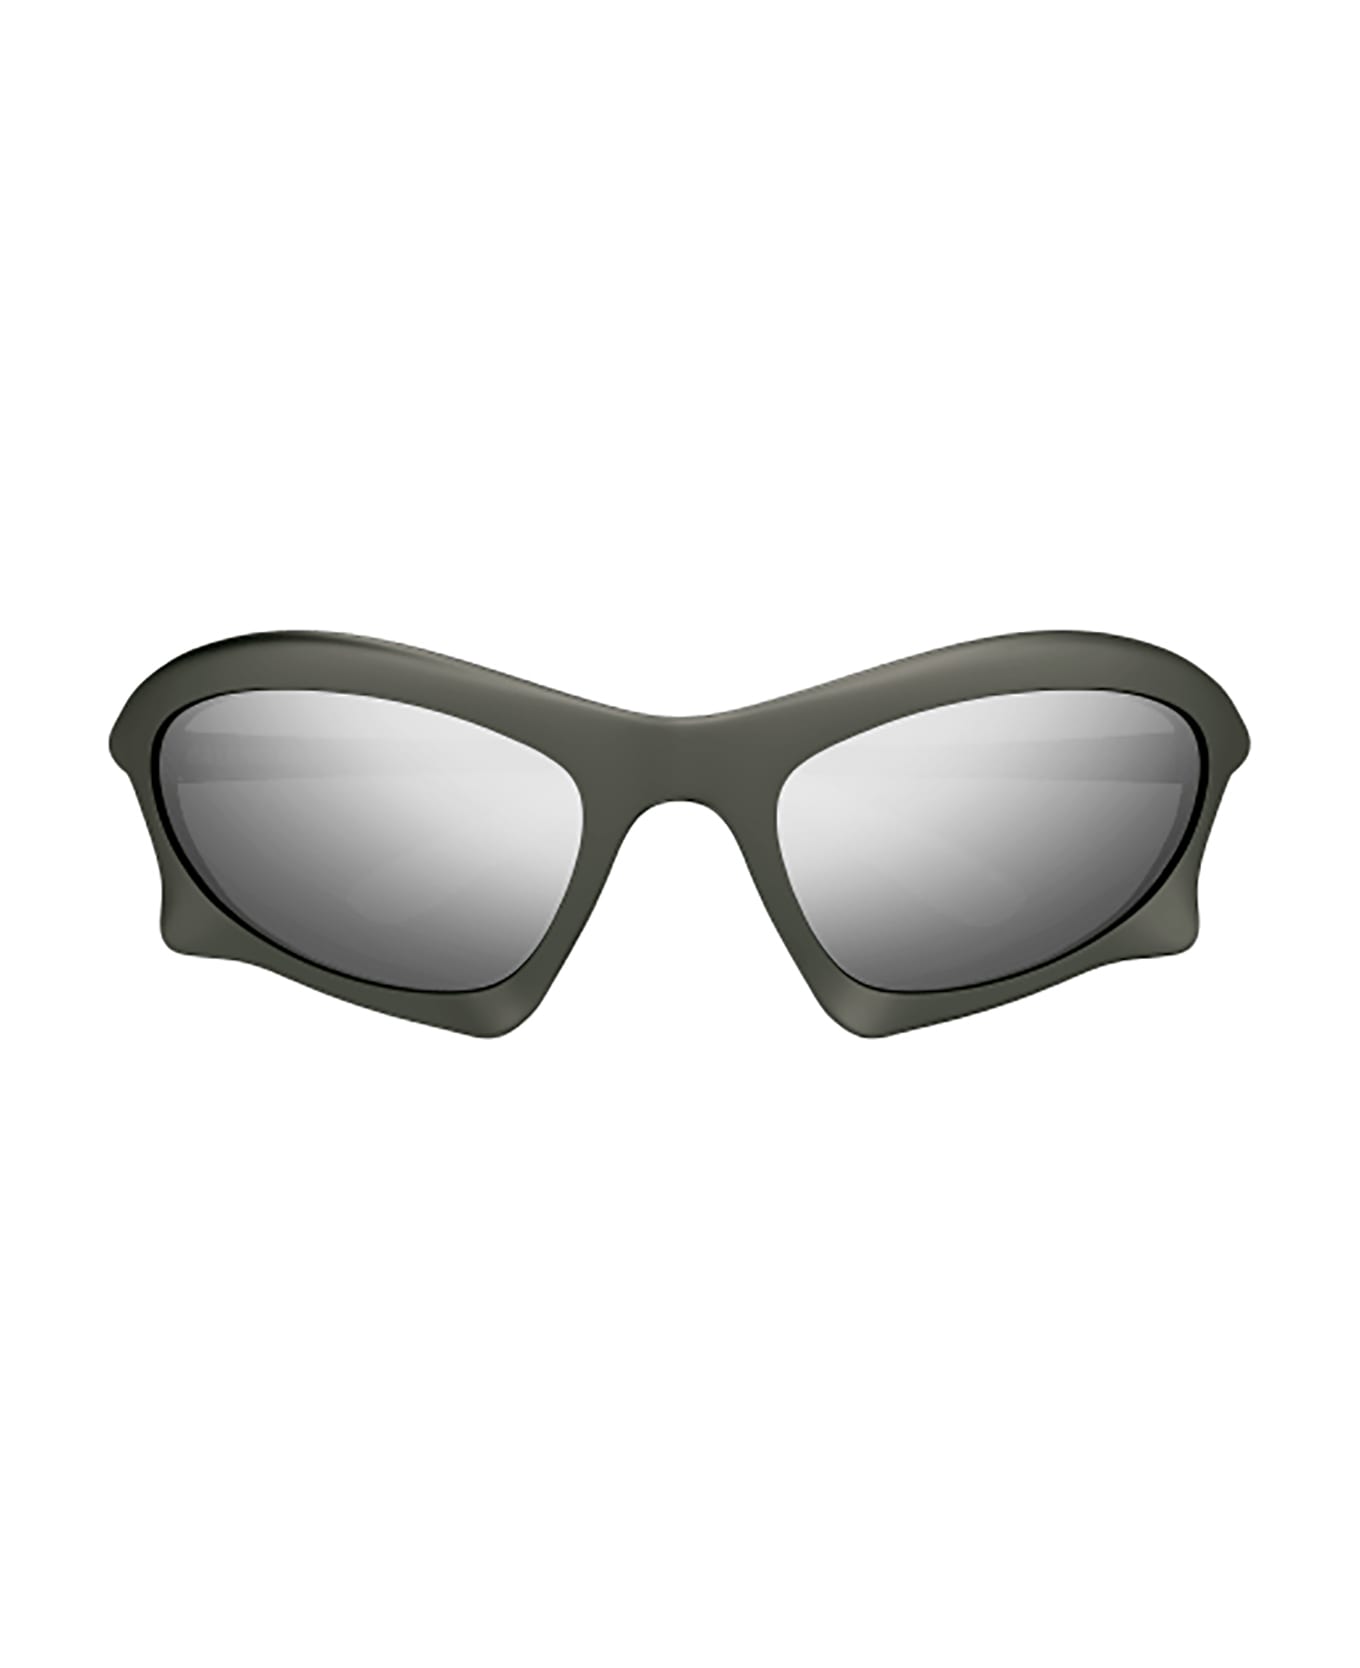 Balenciaga Eyewear BB0229S Sunglasses - Ruthenium Ruthenium S サングラス